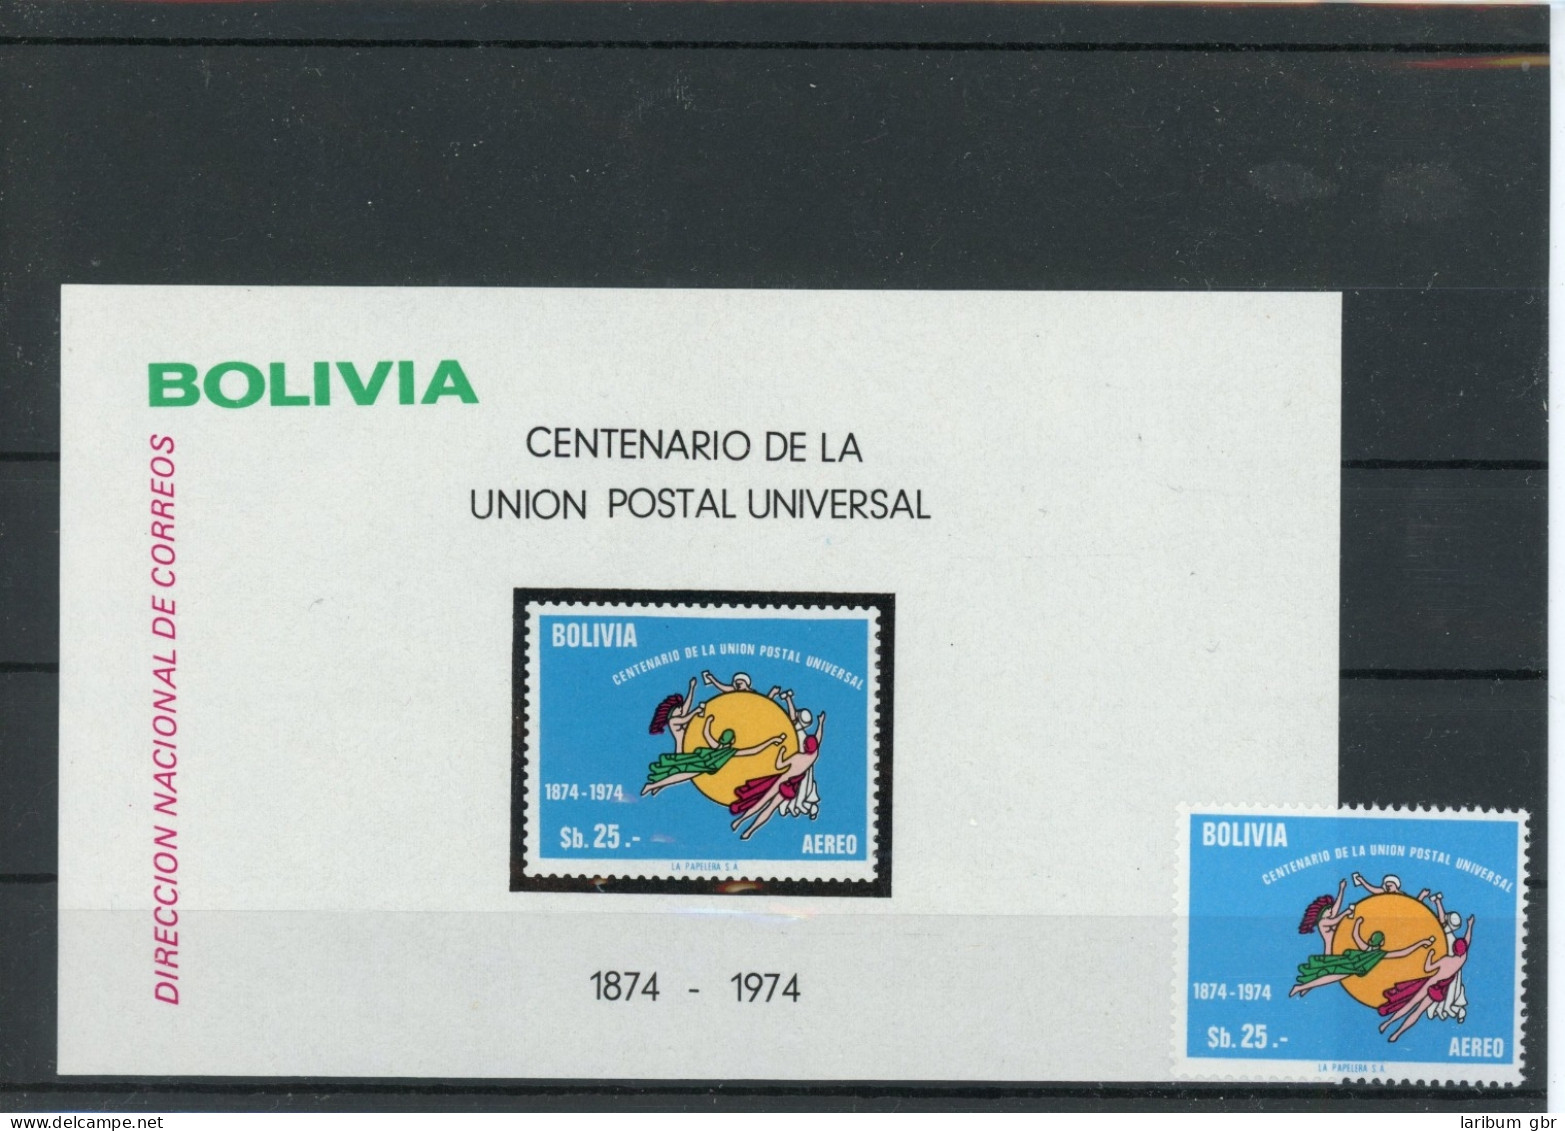 Bolivien 905, Block 65 Postfrisch UPU #HK878 - Bolivia